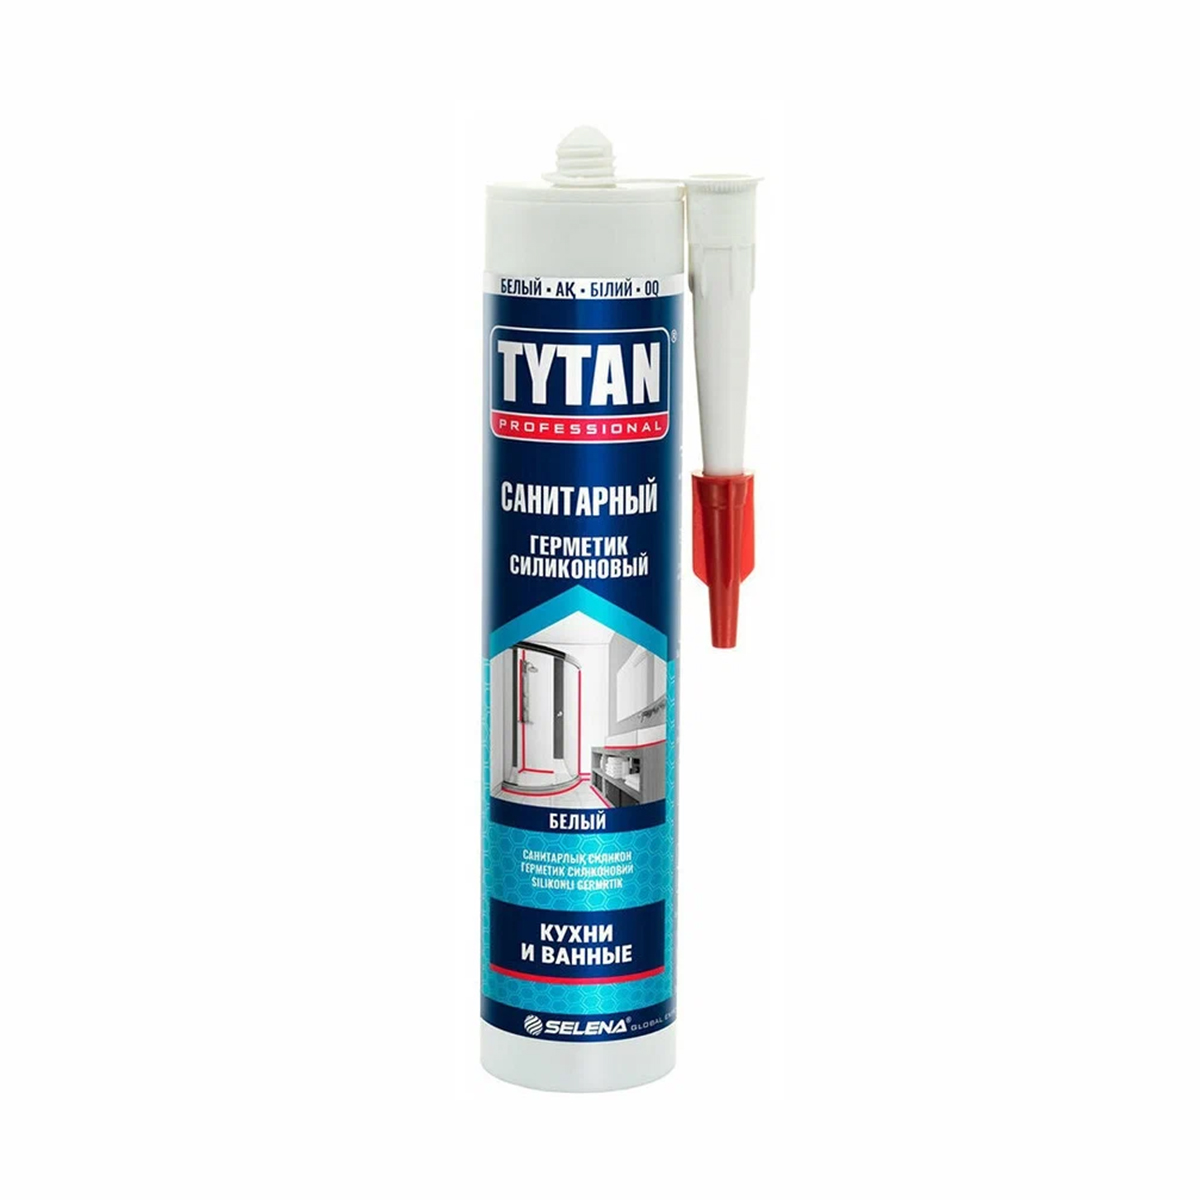 Силиконовый санитарный герметик Tytan Professional 17438, 280 мл, белый герметик силиконовый универсальный tytan 17899 280 мл белый